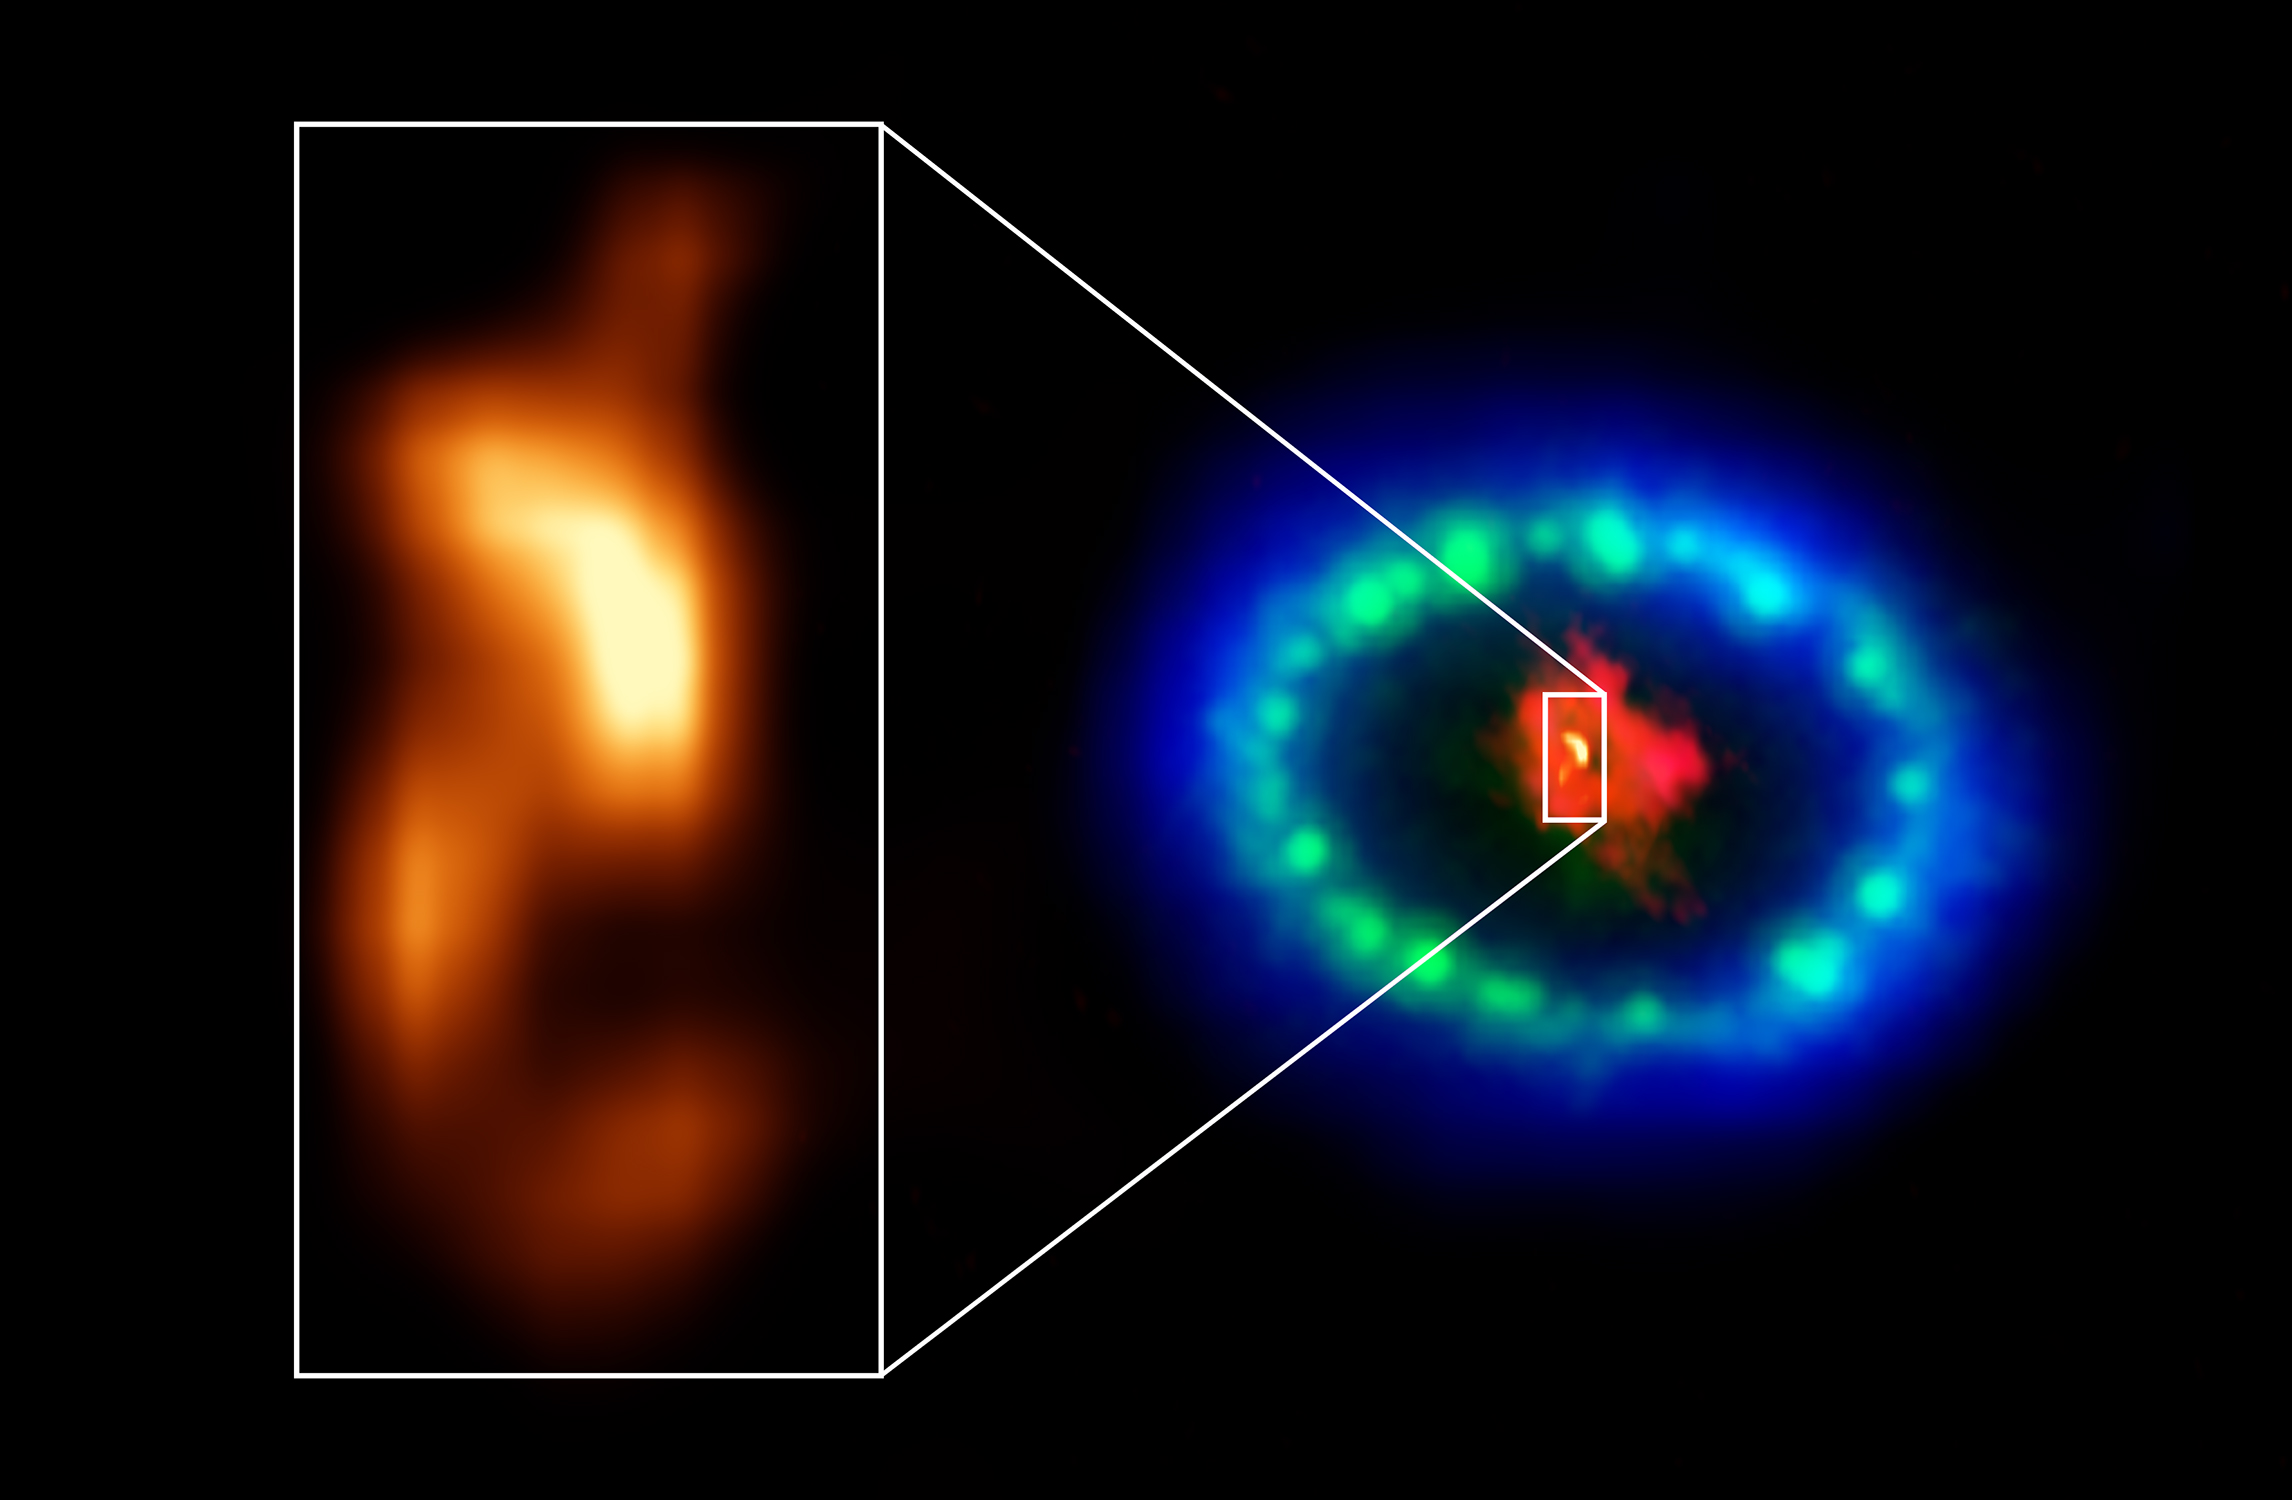 El agujero negro supermasivo de la NASA fue observado utilizando el Telescopio Espacial James Webb (JWST).